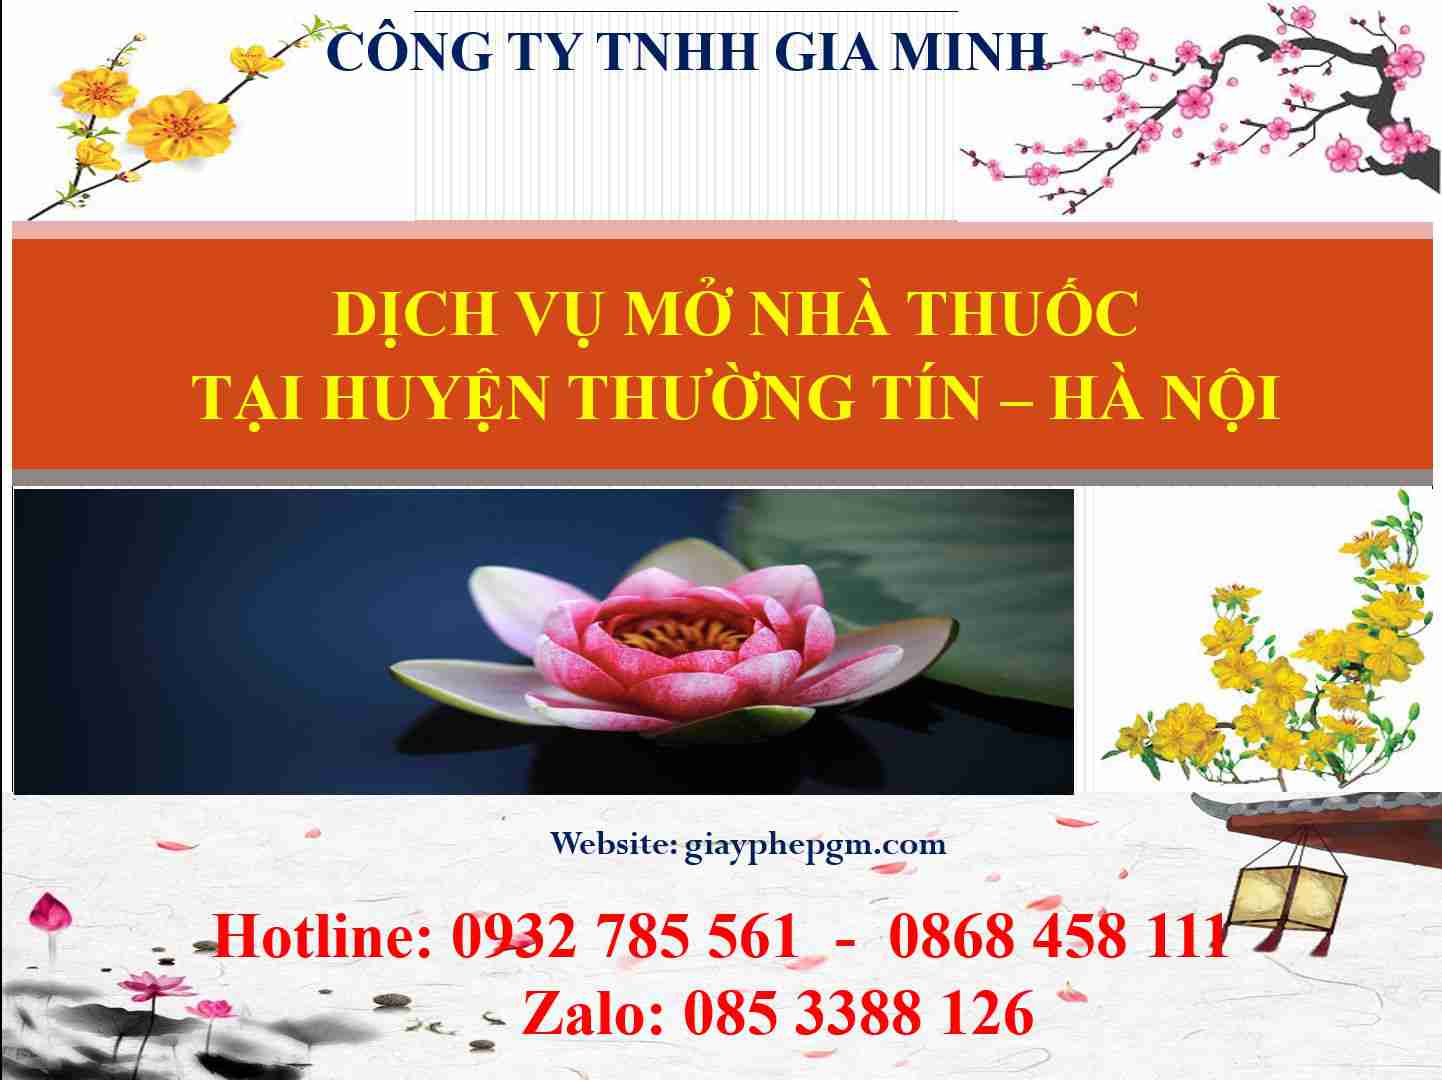 Dịch vụ mở nhà thuốc tại Huyện Thường Tín - Hà Nội